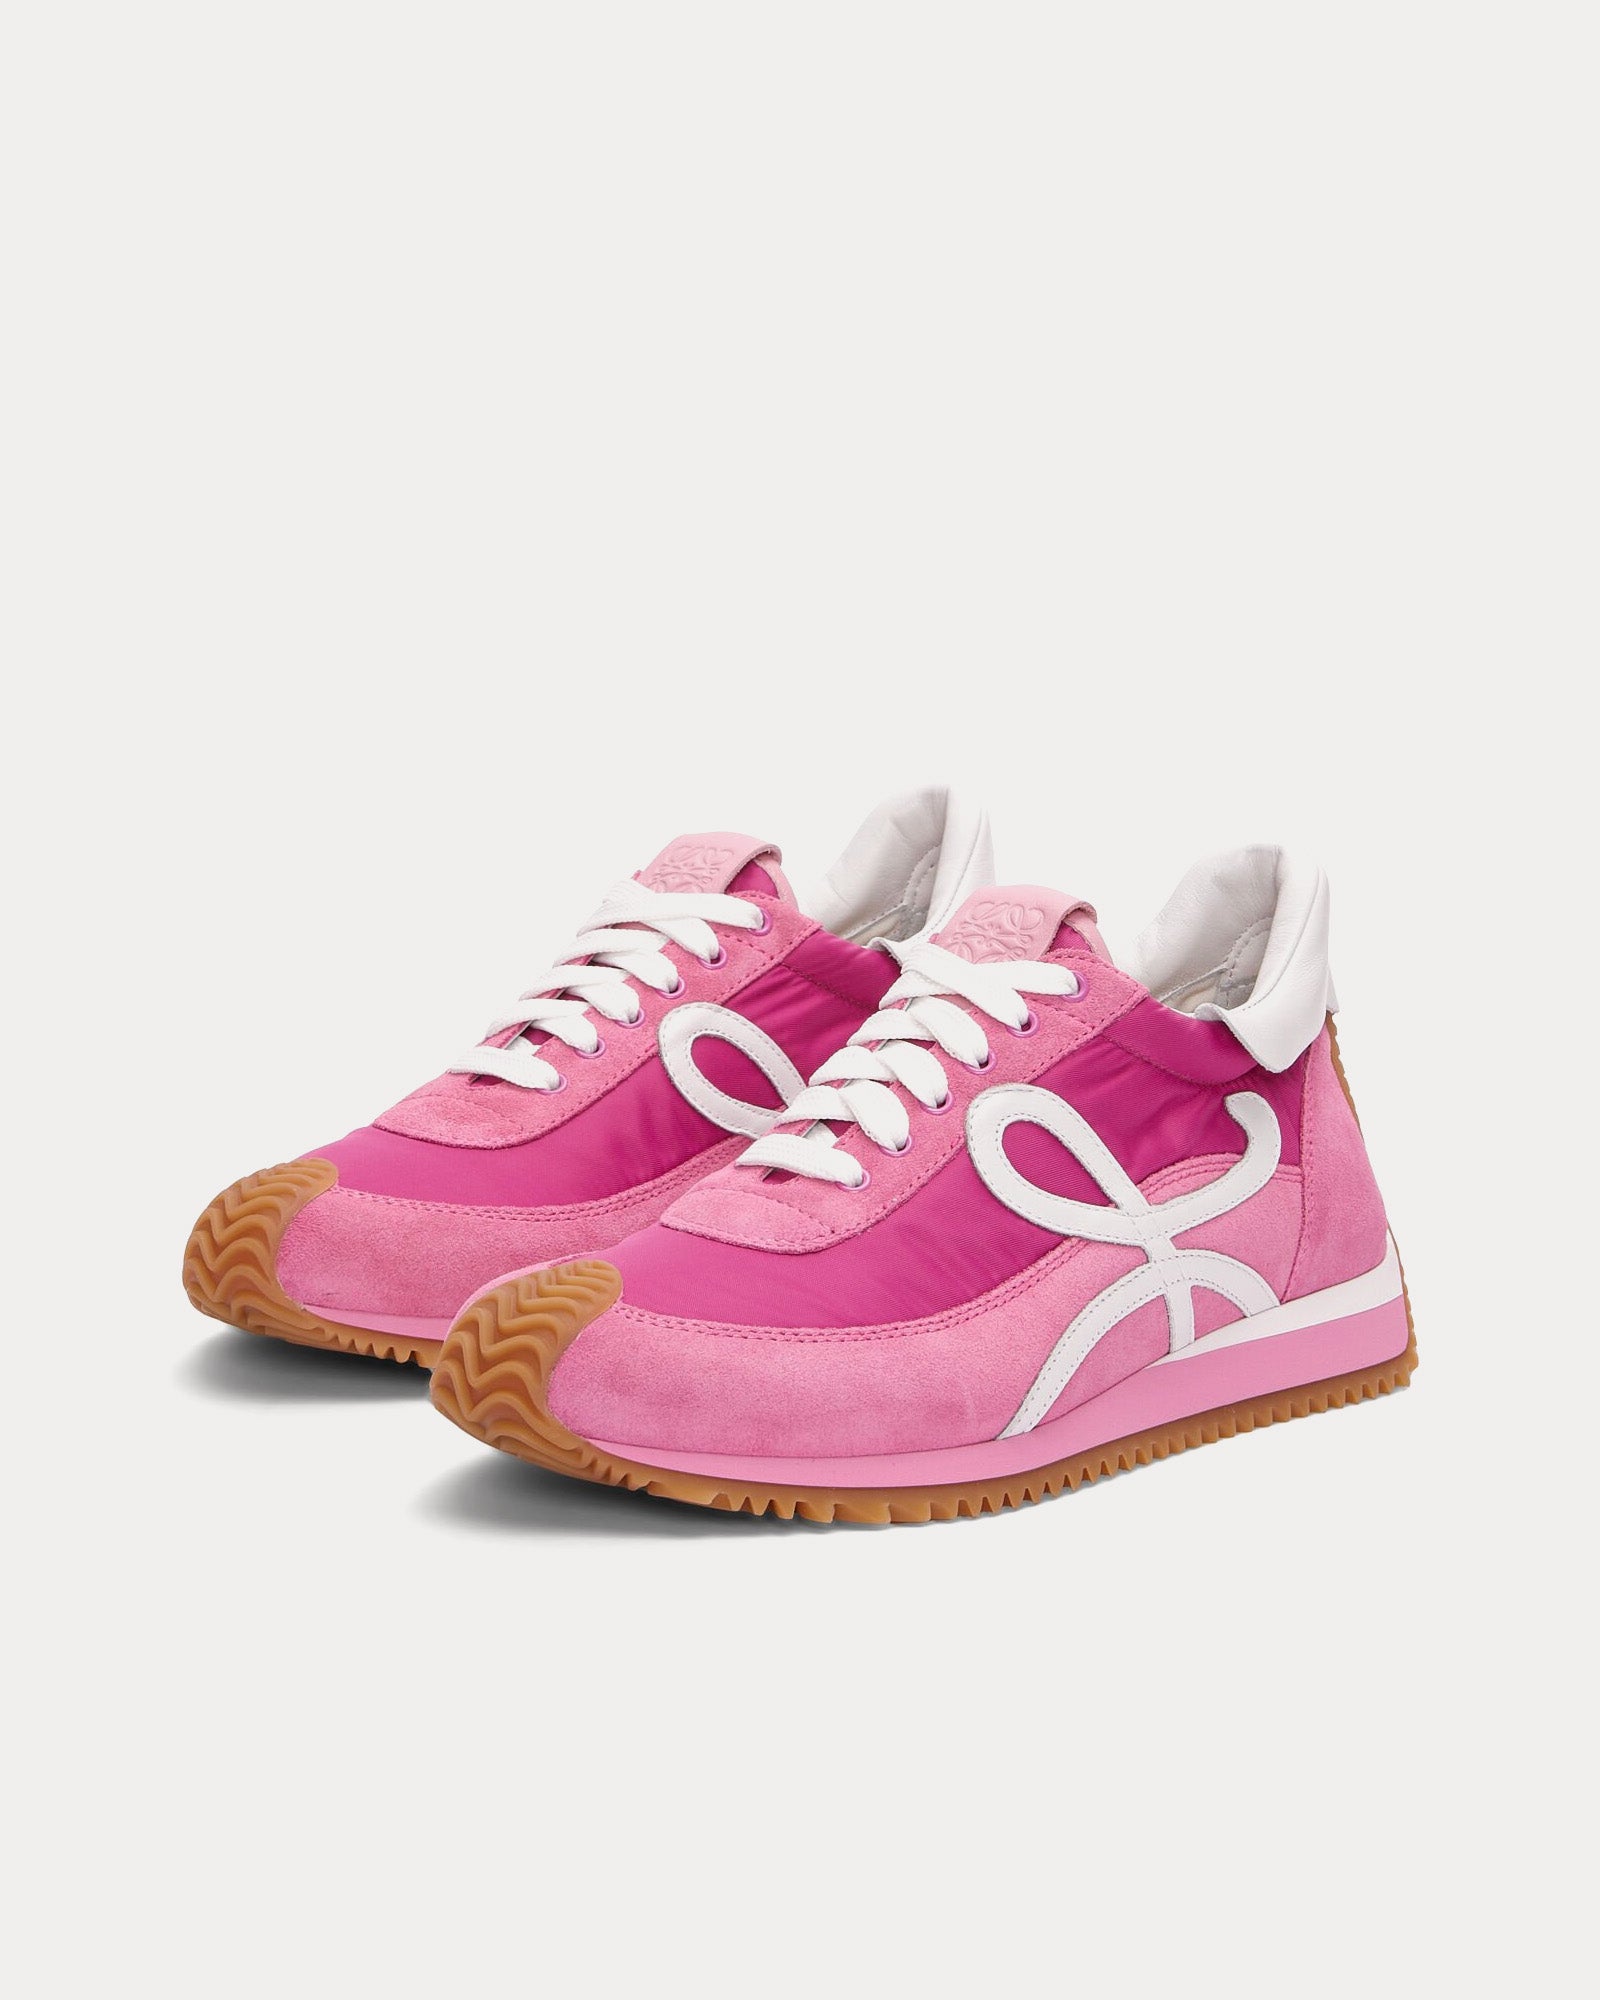 Loewe x Paula's Ibiza - Flow Runner Nylon & Suede Pink Low Top Sneakers